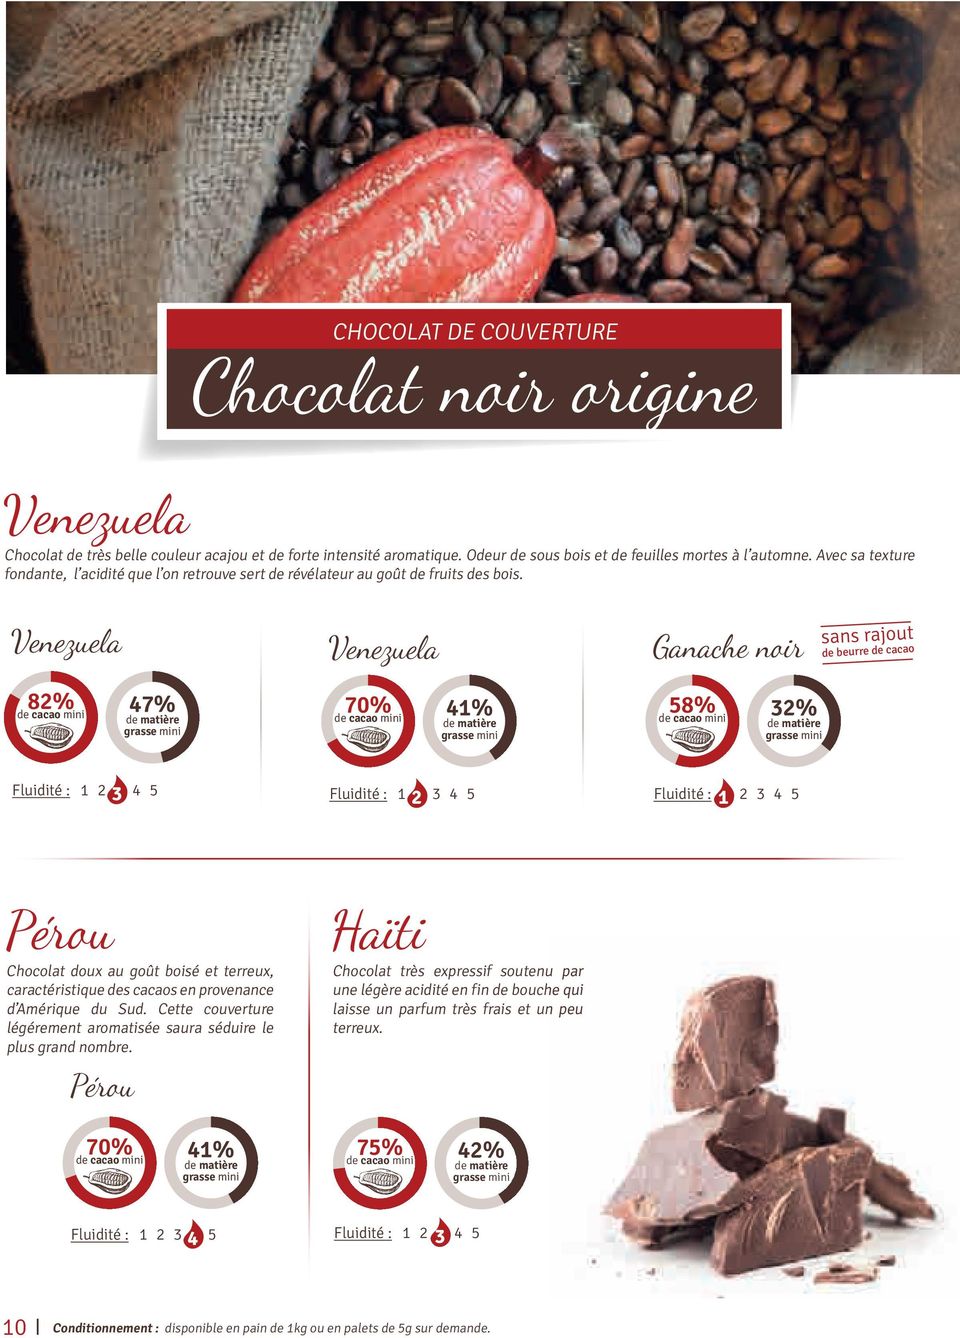 Venezuela Venezuela Ganache noir sans rajout de beurre de cacao 82% 47% 70% 41% 58% 32% Fluidité : 1 2 3 4 5 Fluidité : 1 2 3 4 5 Fluidité : 1 2 3 4 5 Pérou Chocolat doux au goût boisé et terreux,